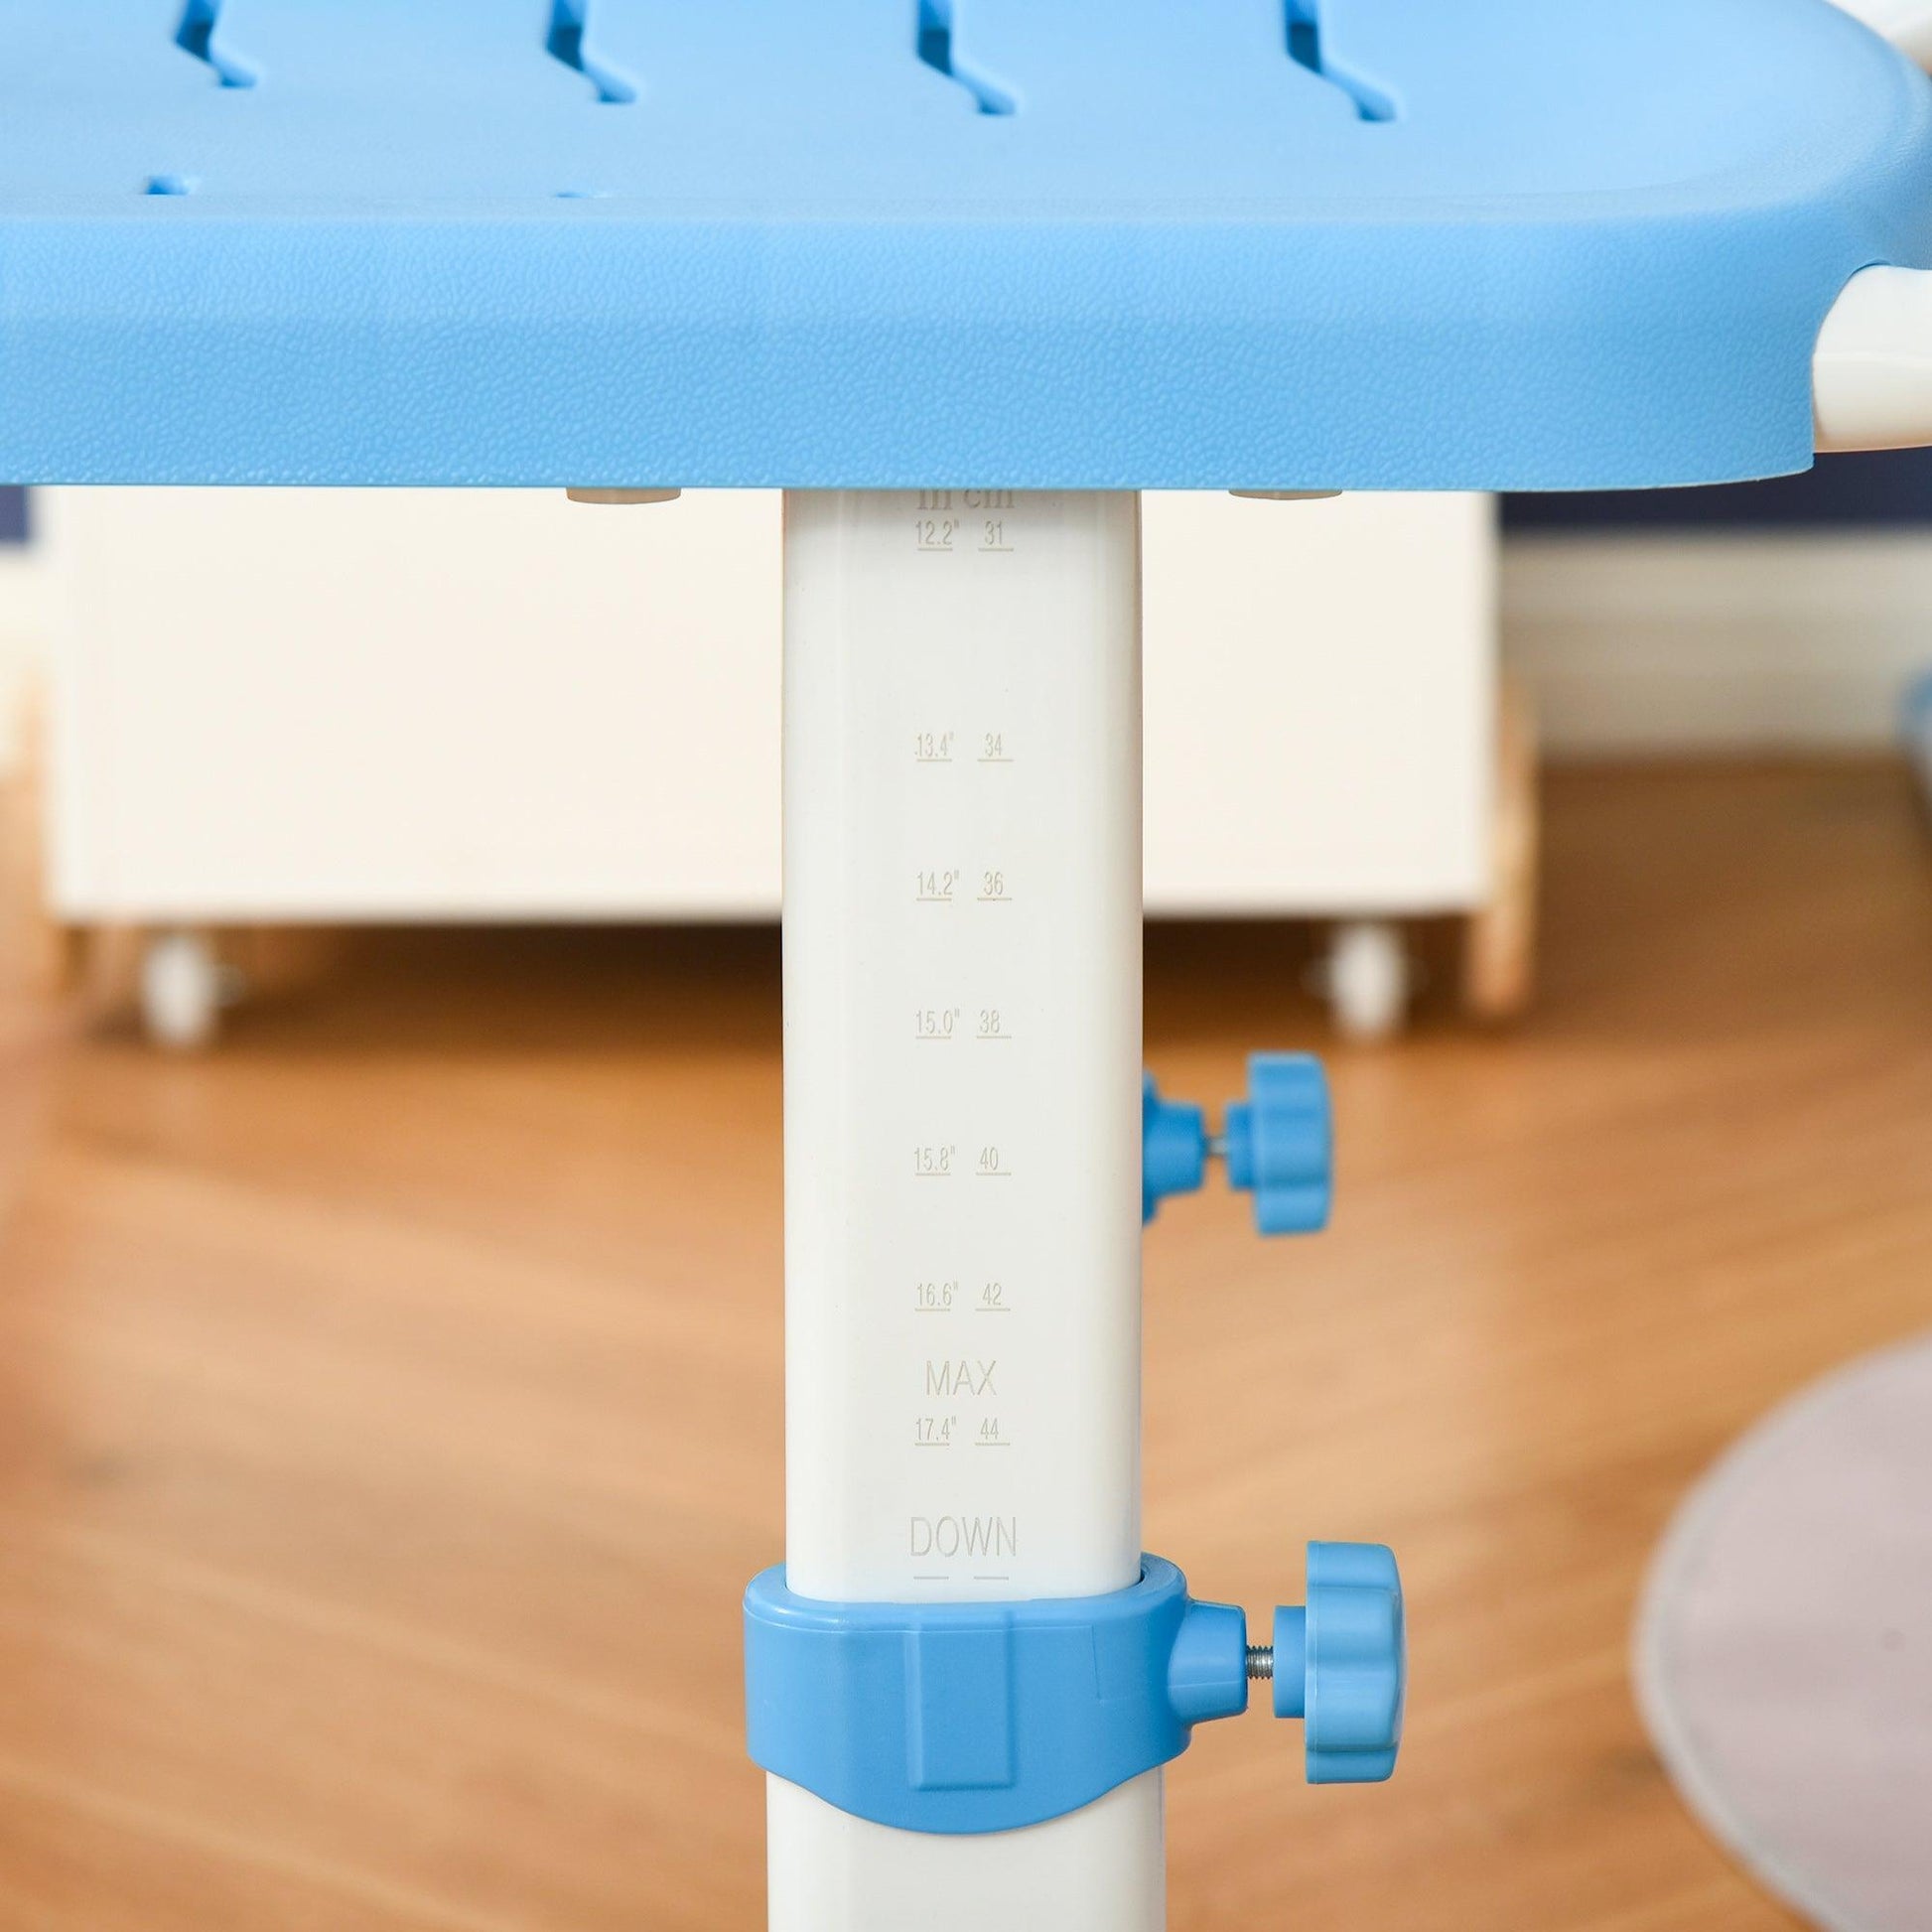 HOMCOM Adjustable Kids Desk & Chair Set with Tiltable Desktop – Blue - ALL4U RETAILER LTD